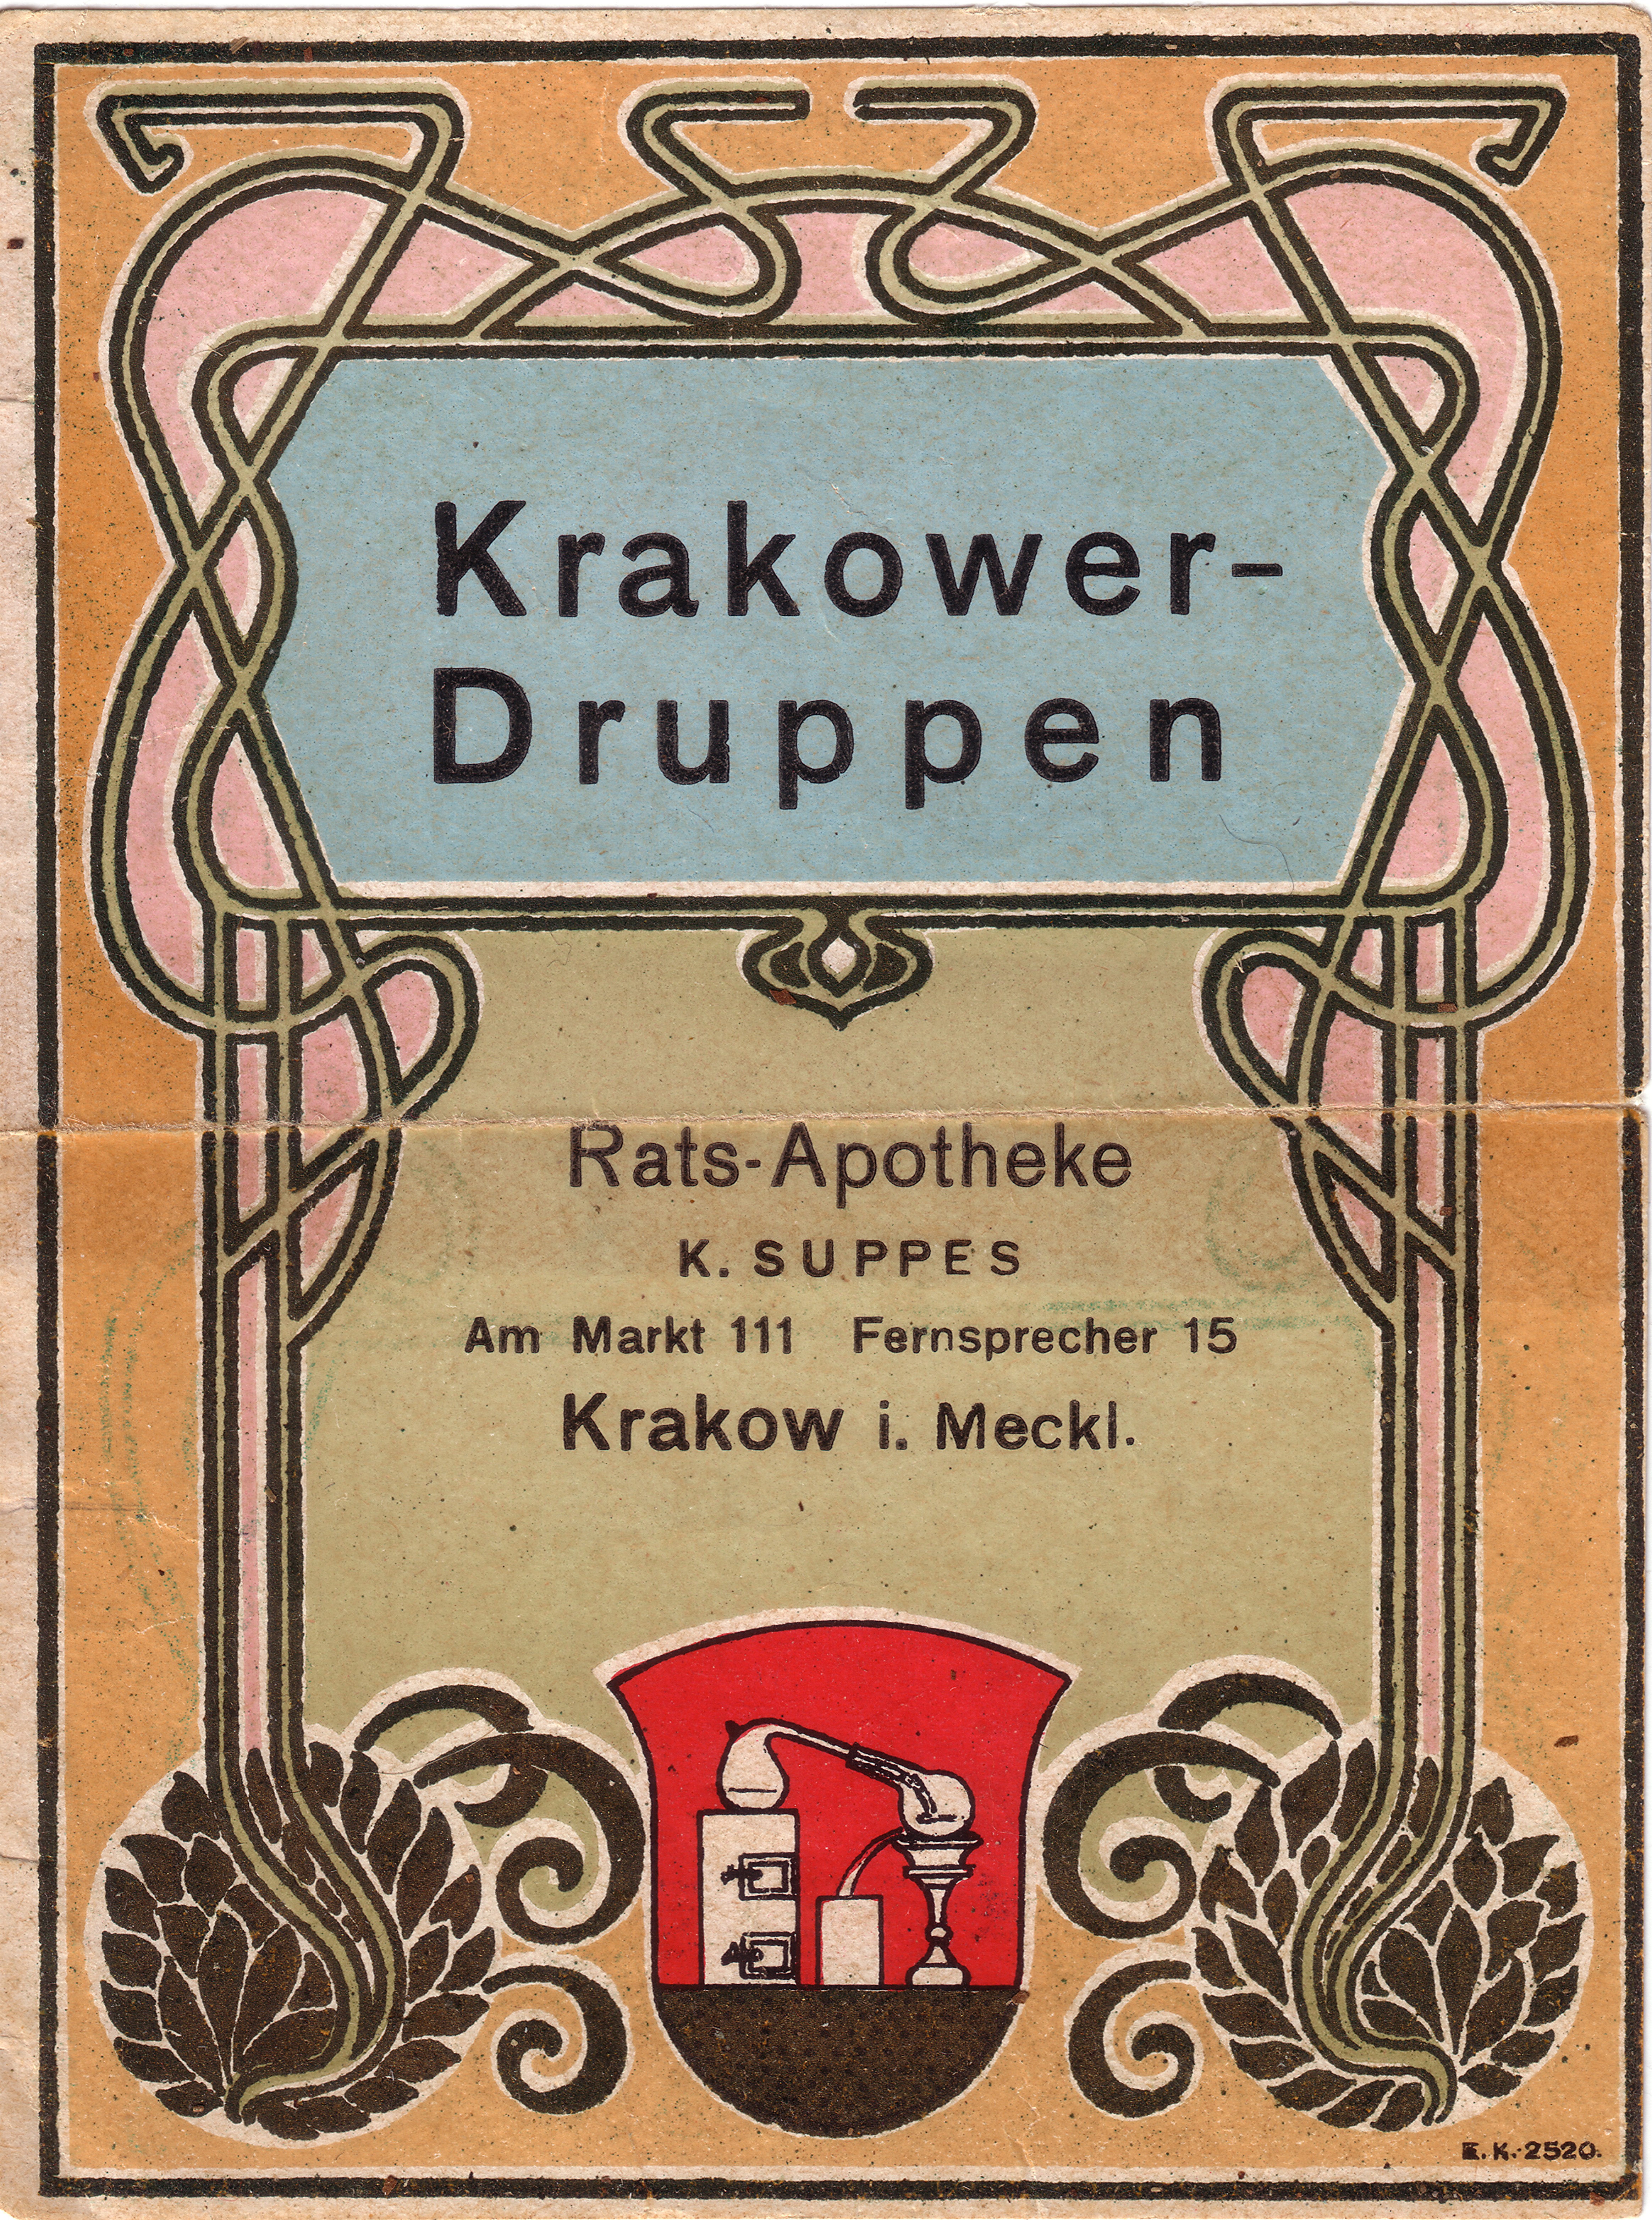 Original Krakower Druppen